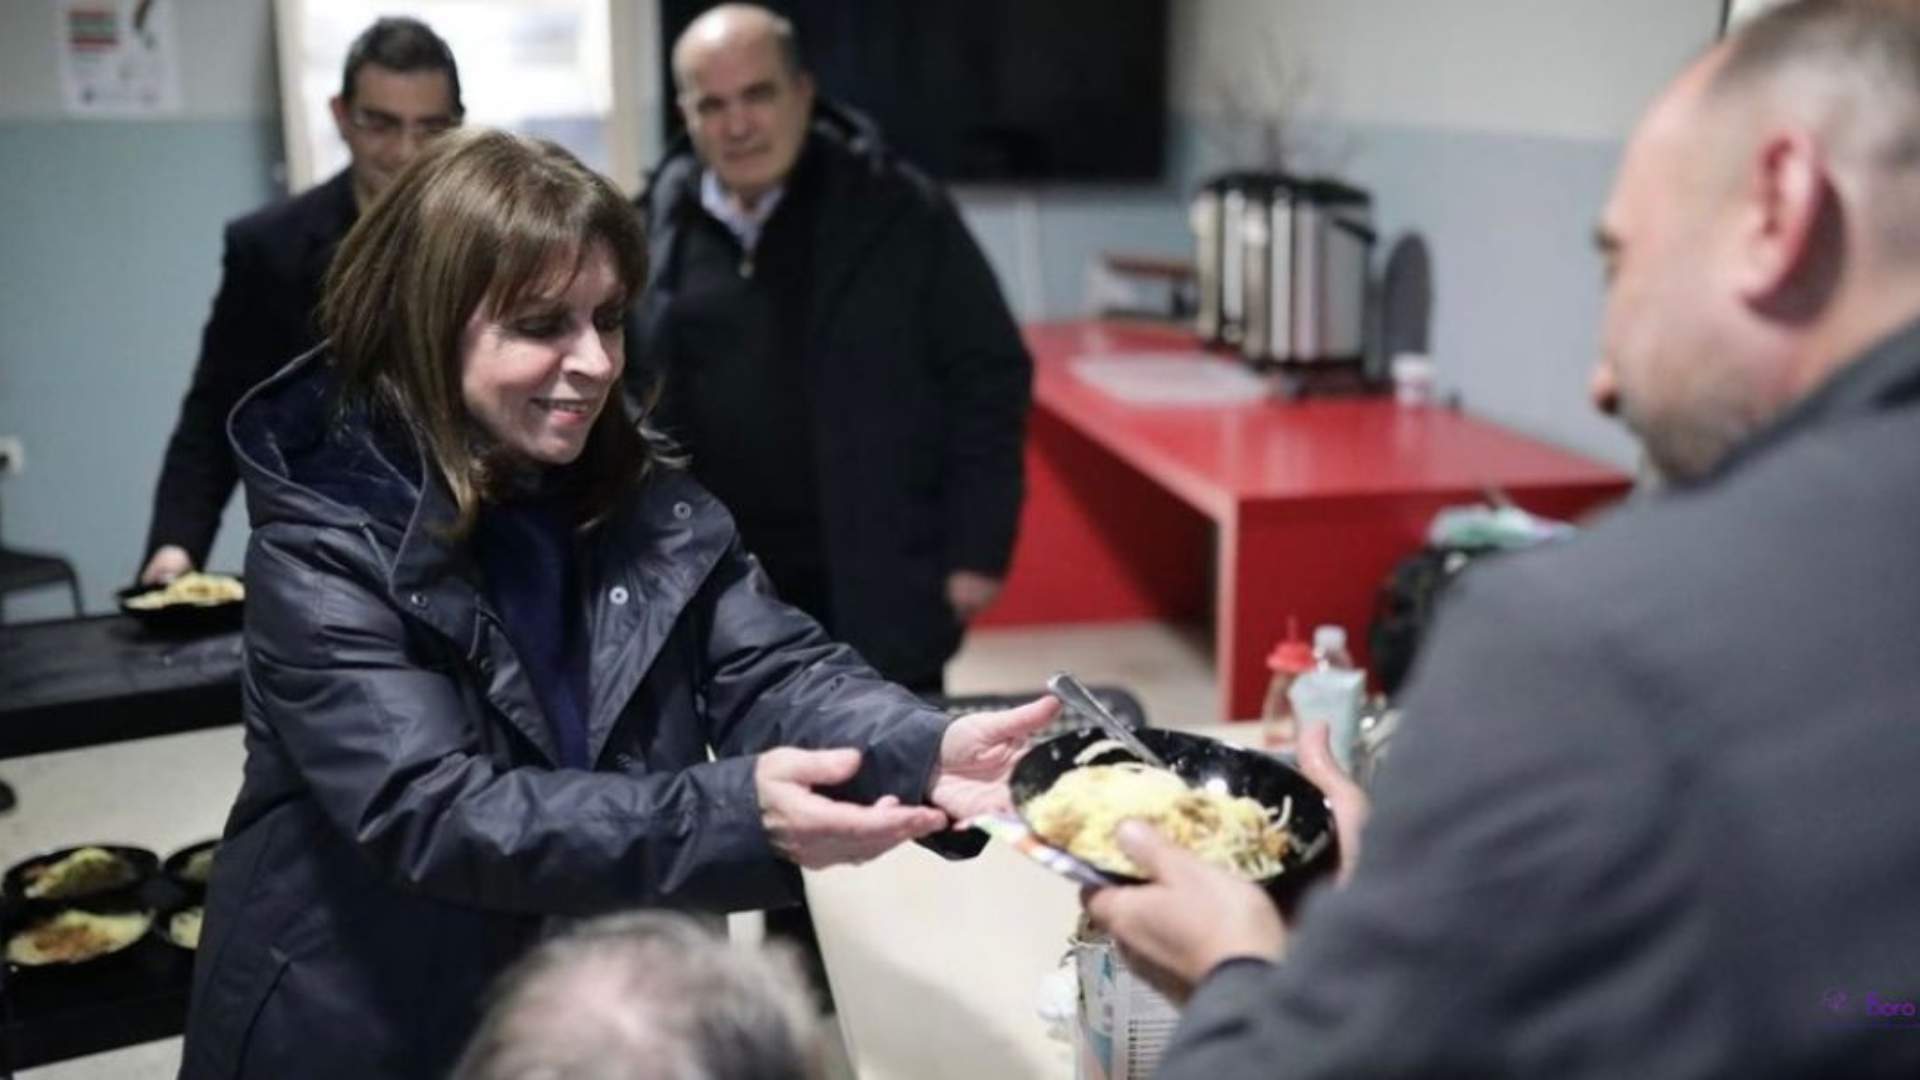 γευματα αγαπης και αλληλεγγυης μοιρασε σε αστεγους η προεδρος της δημοκρατιας